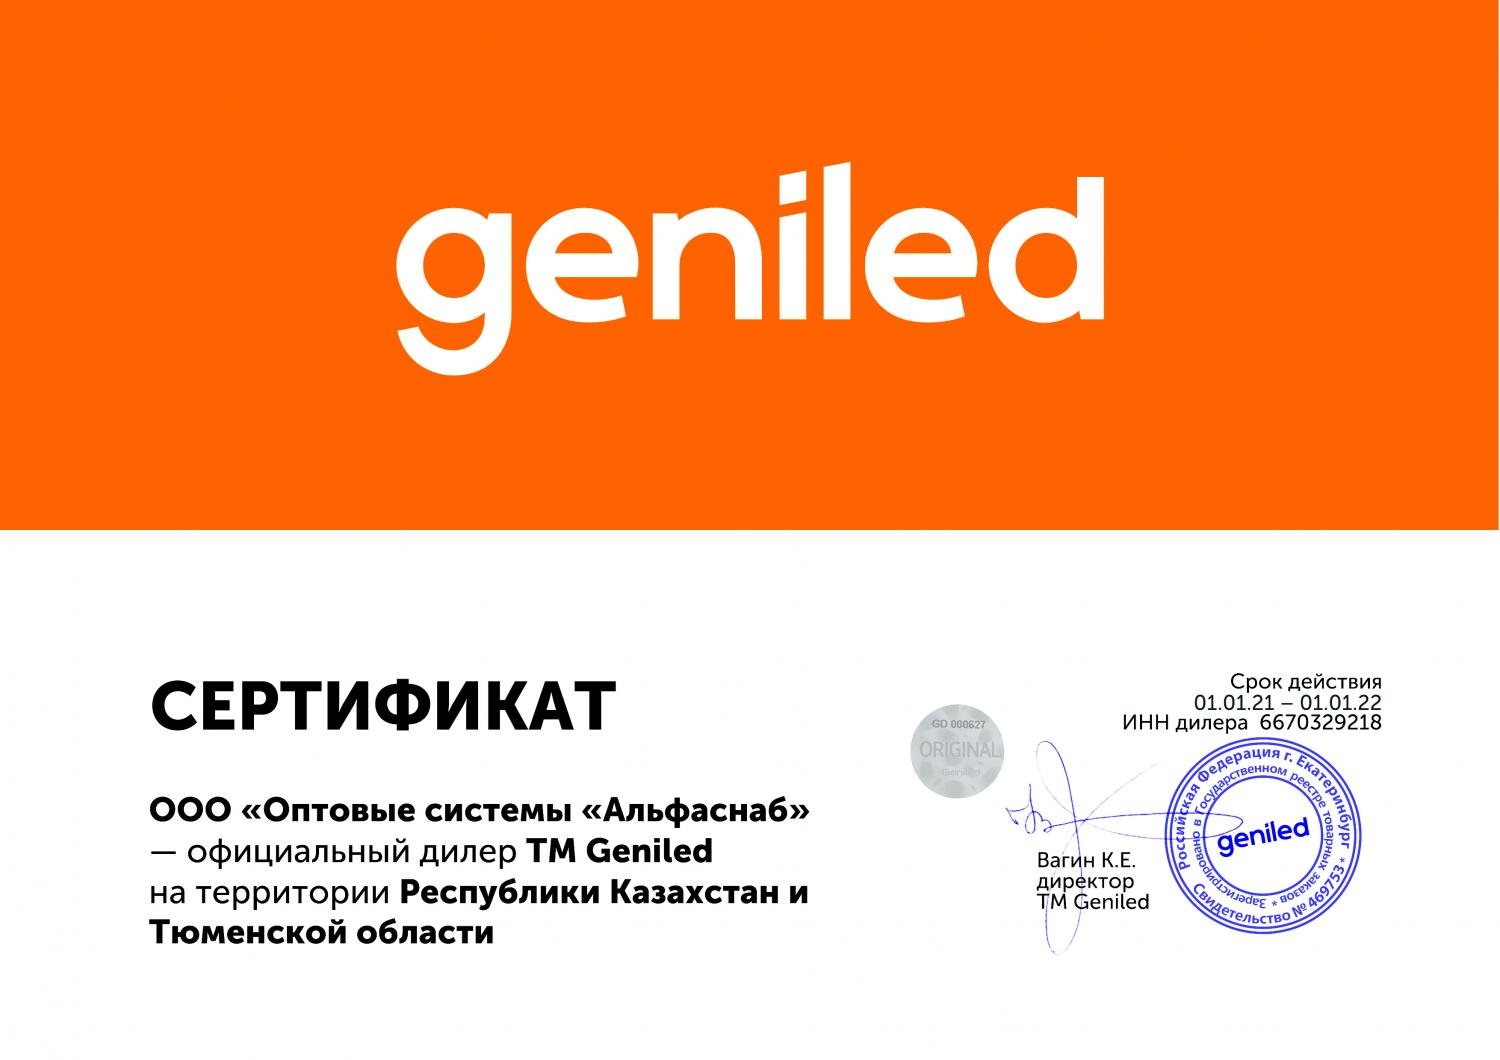 Сертификат ТМ Geniled для ООО "АльфаСнаб" на УРФО, до 01.01.2022